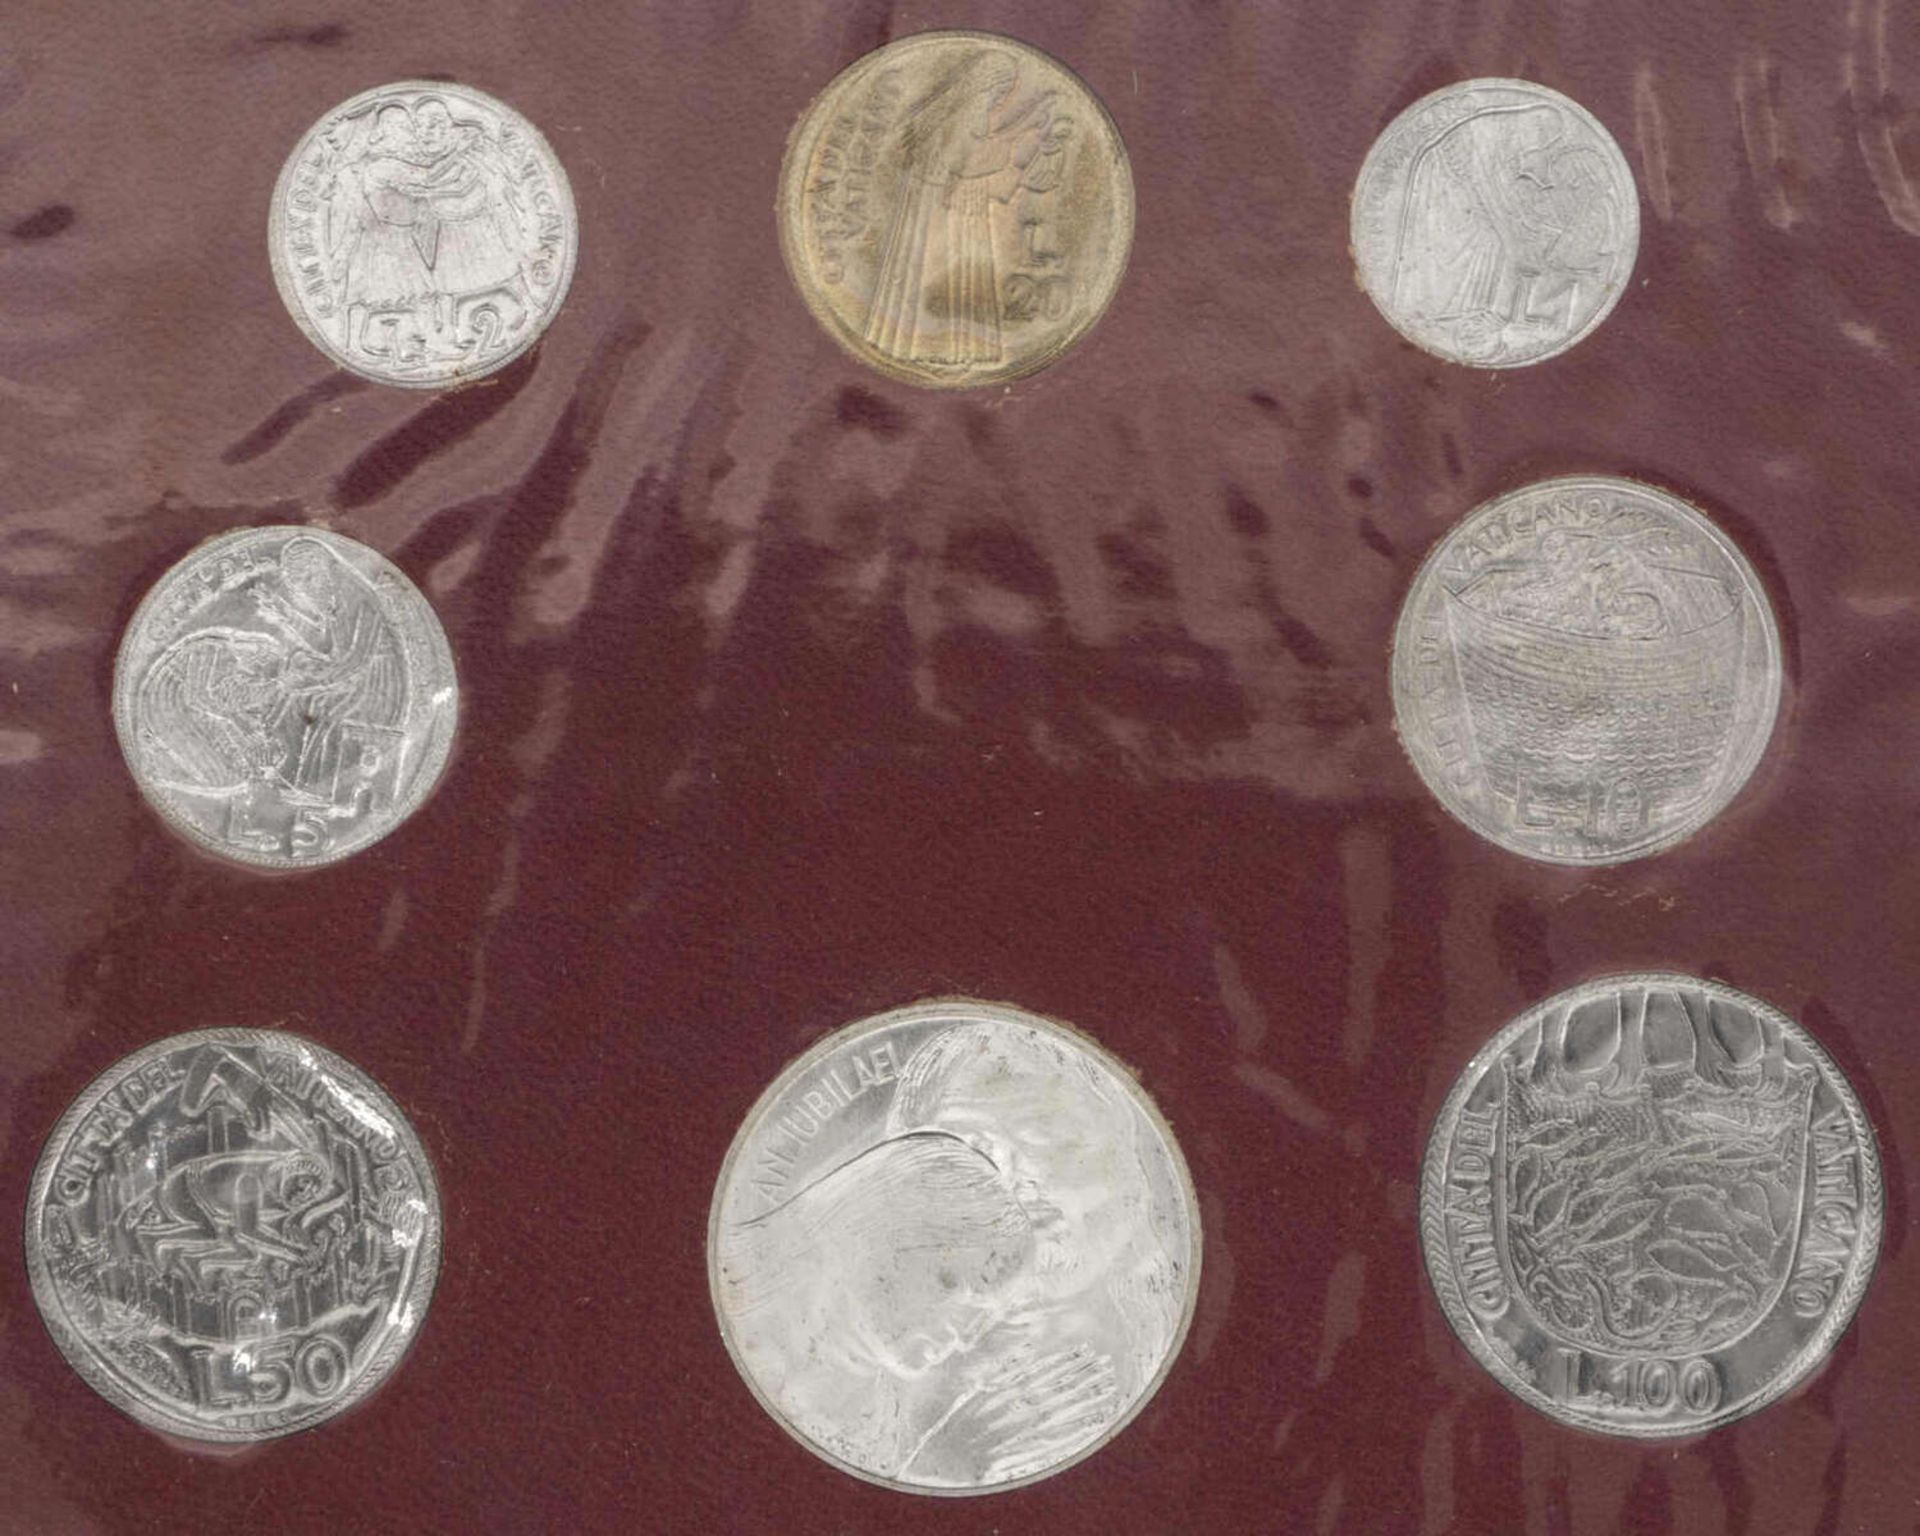 Vatikan 1975, Kursmünzensatz "Pail VI.". Stgl. Vatican 1975, coin set "Paul VI". BU. - Bild 2 aus 2